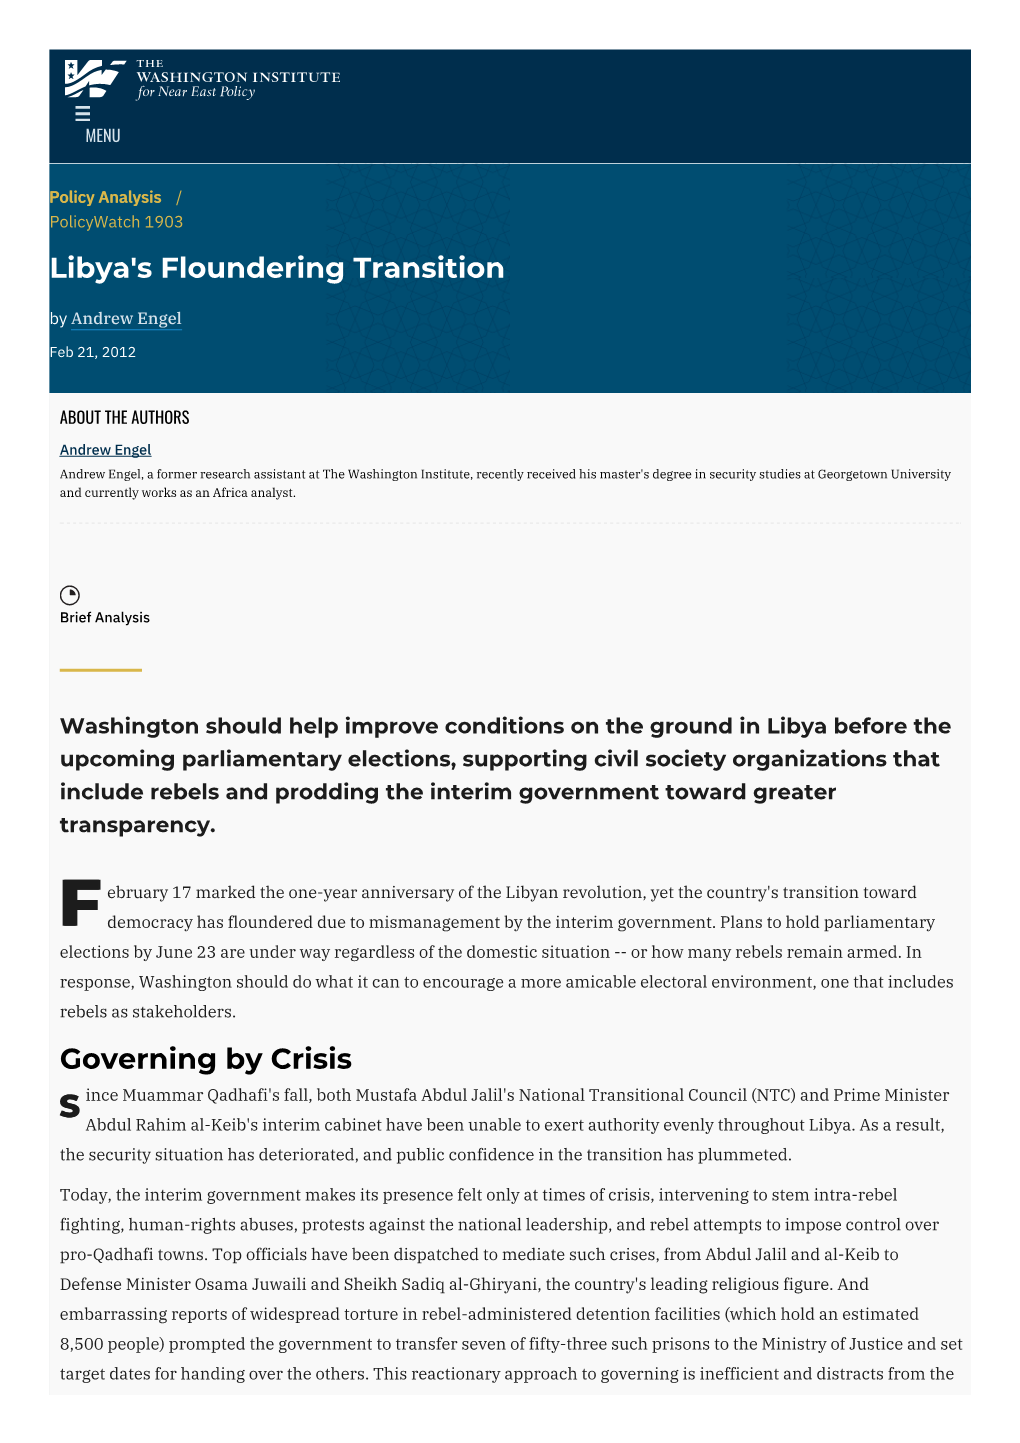 Libya's Floundering Transition | the Washington Institute